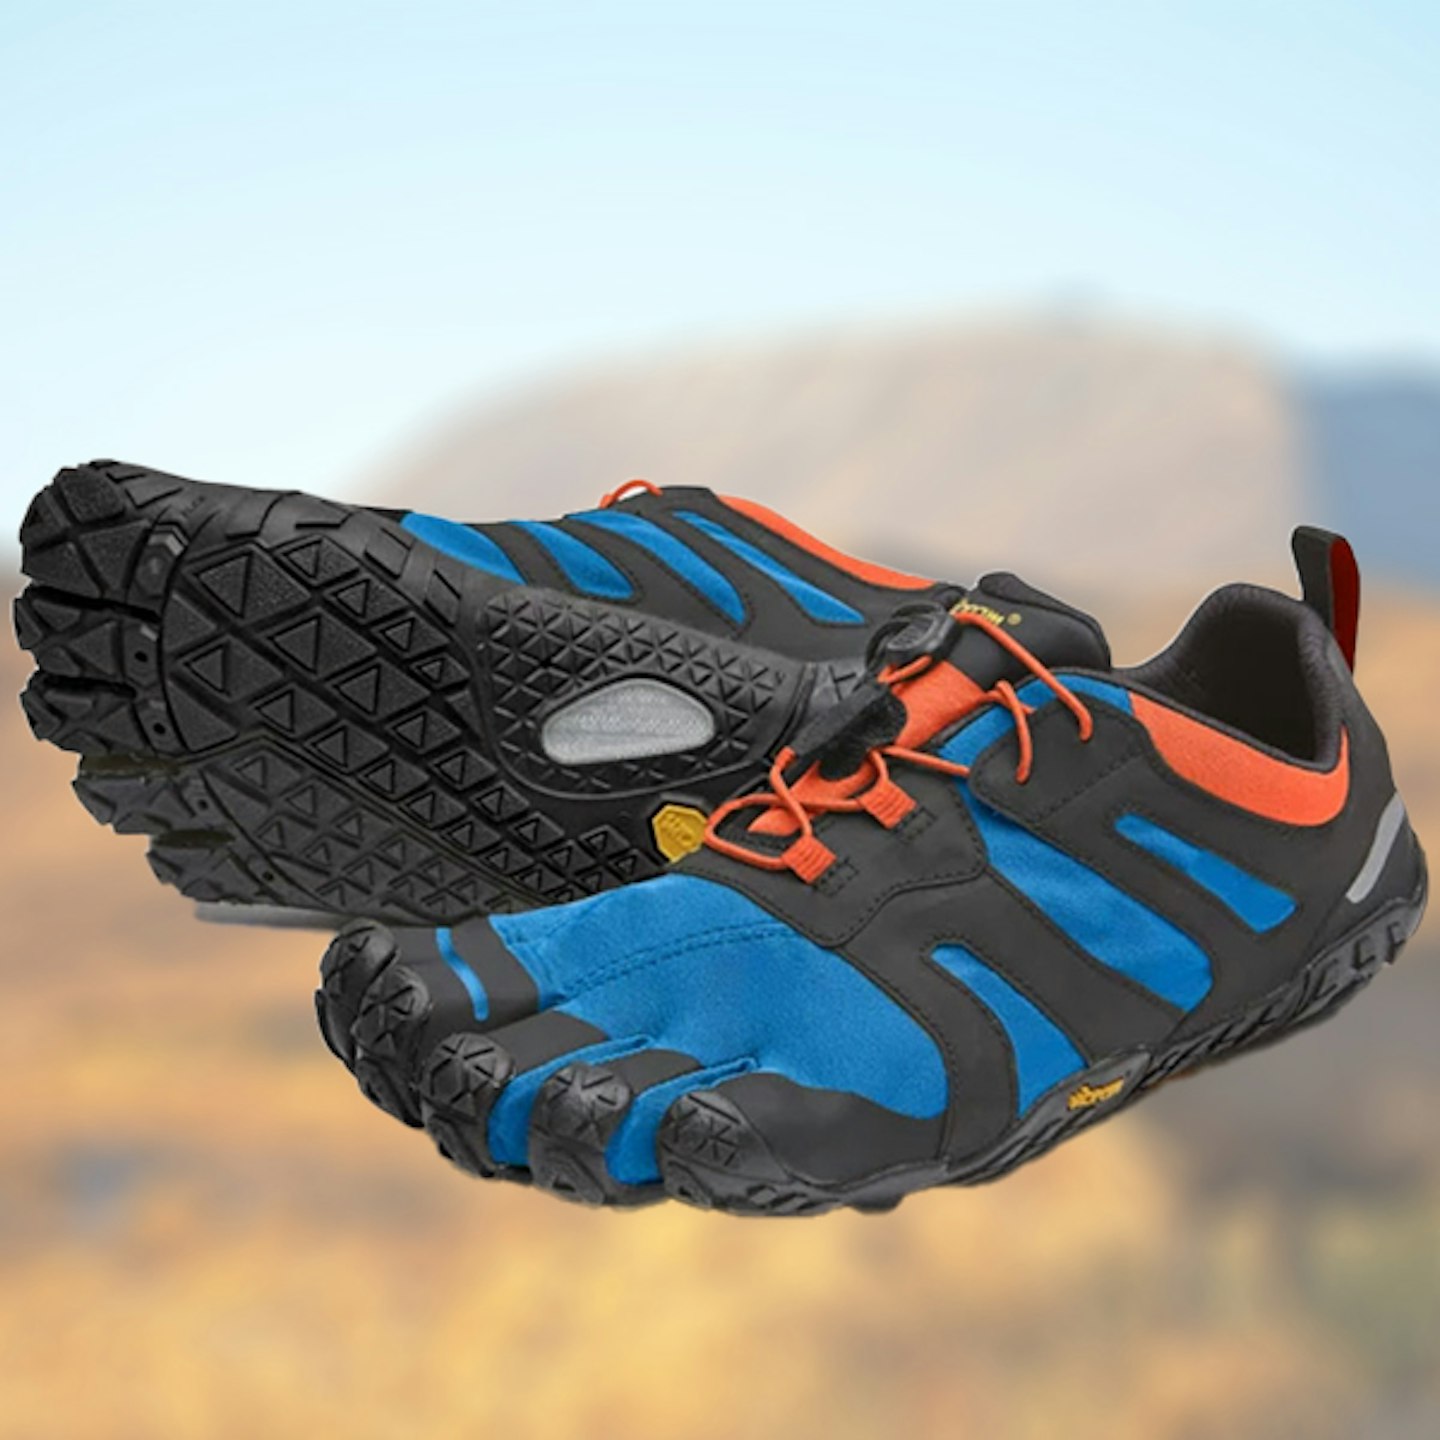 Vibram Fivefingers V-Trail 2.0 running shoe review